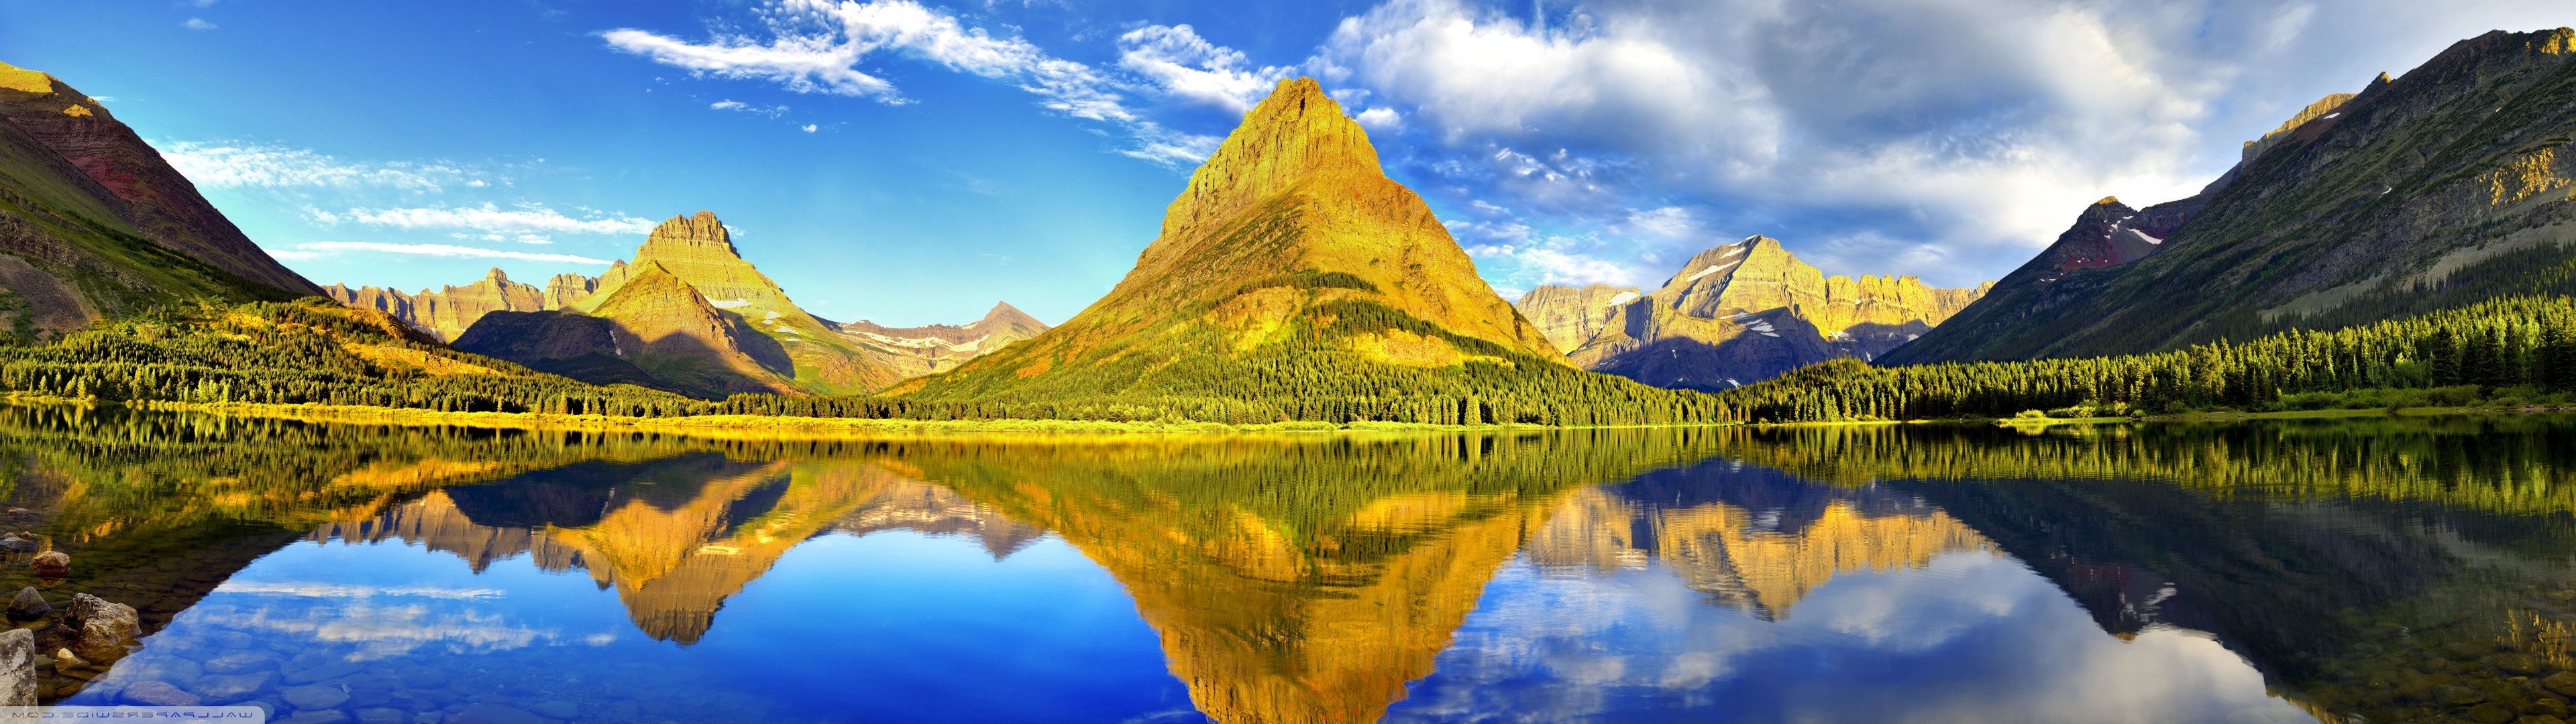 Glacier National Park, Landscape, Mountain range, Larch trees, 3840x1080 Dual Screen Desktop